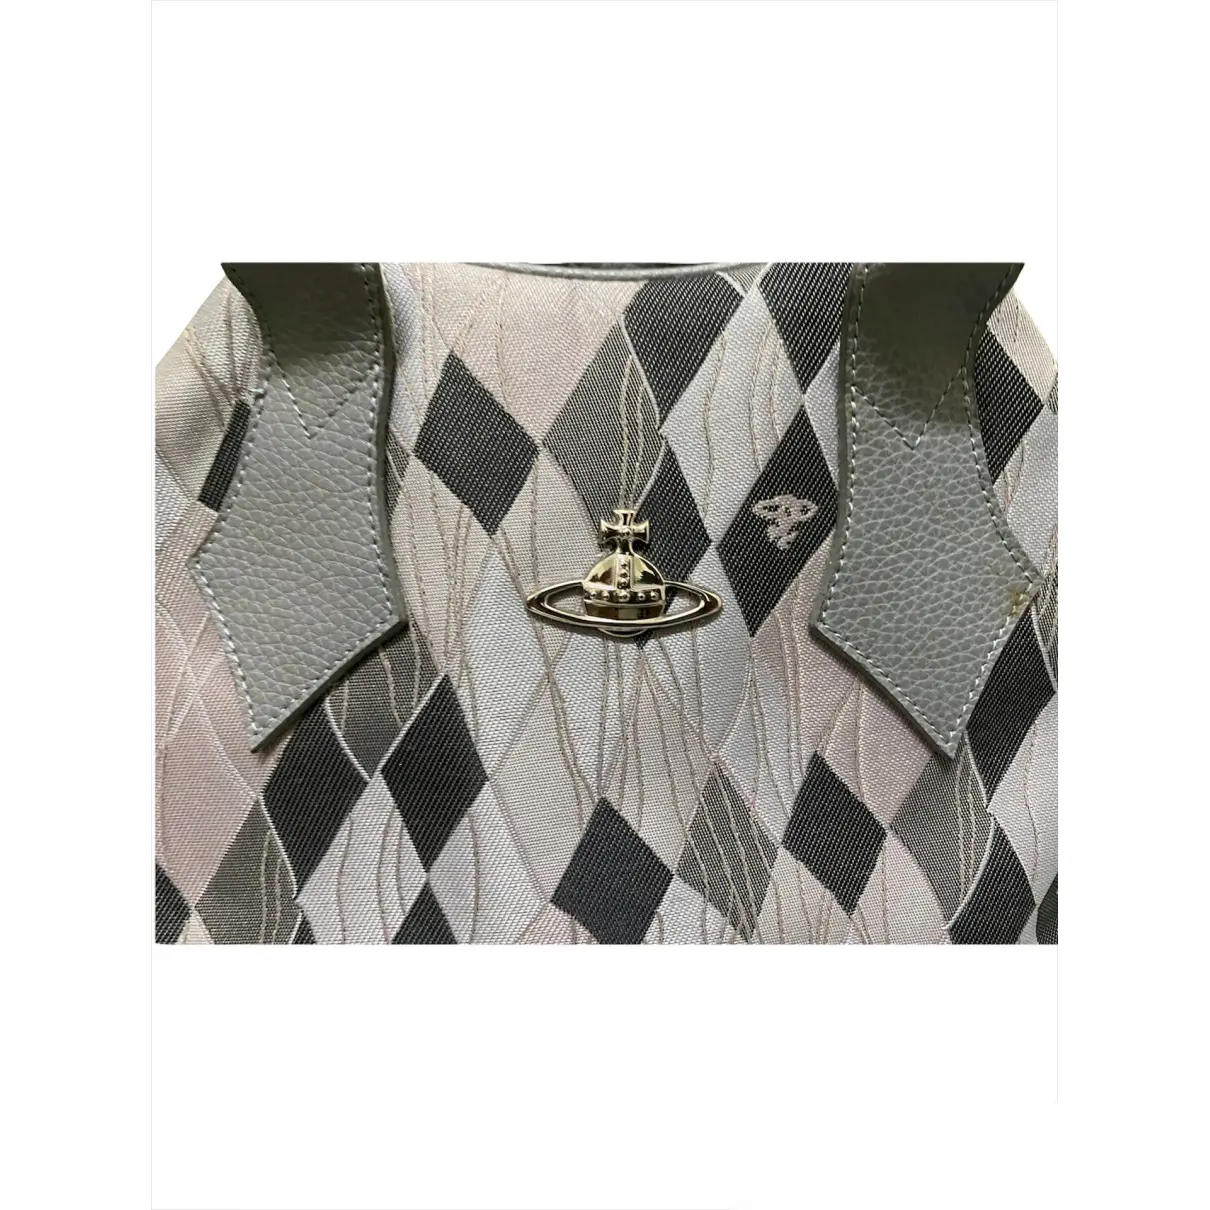 Buy Vivienne Westwood Cloth handbag online